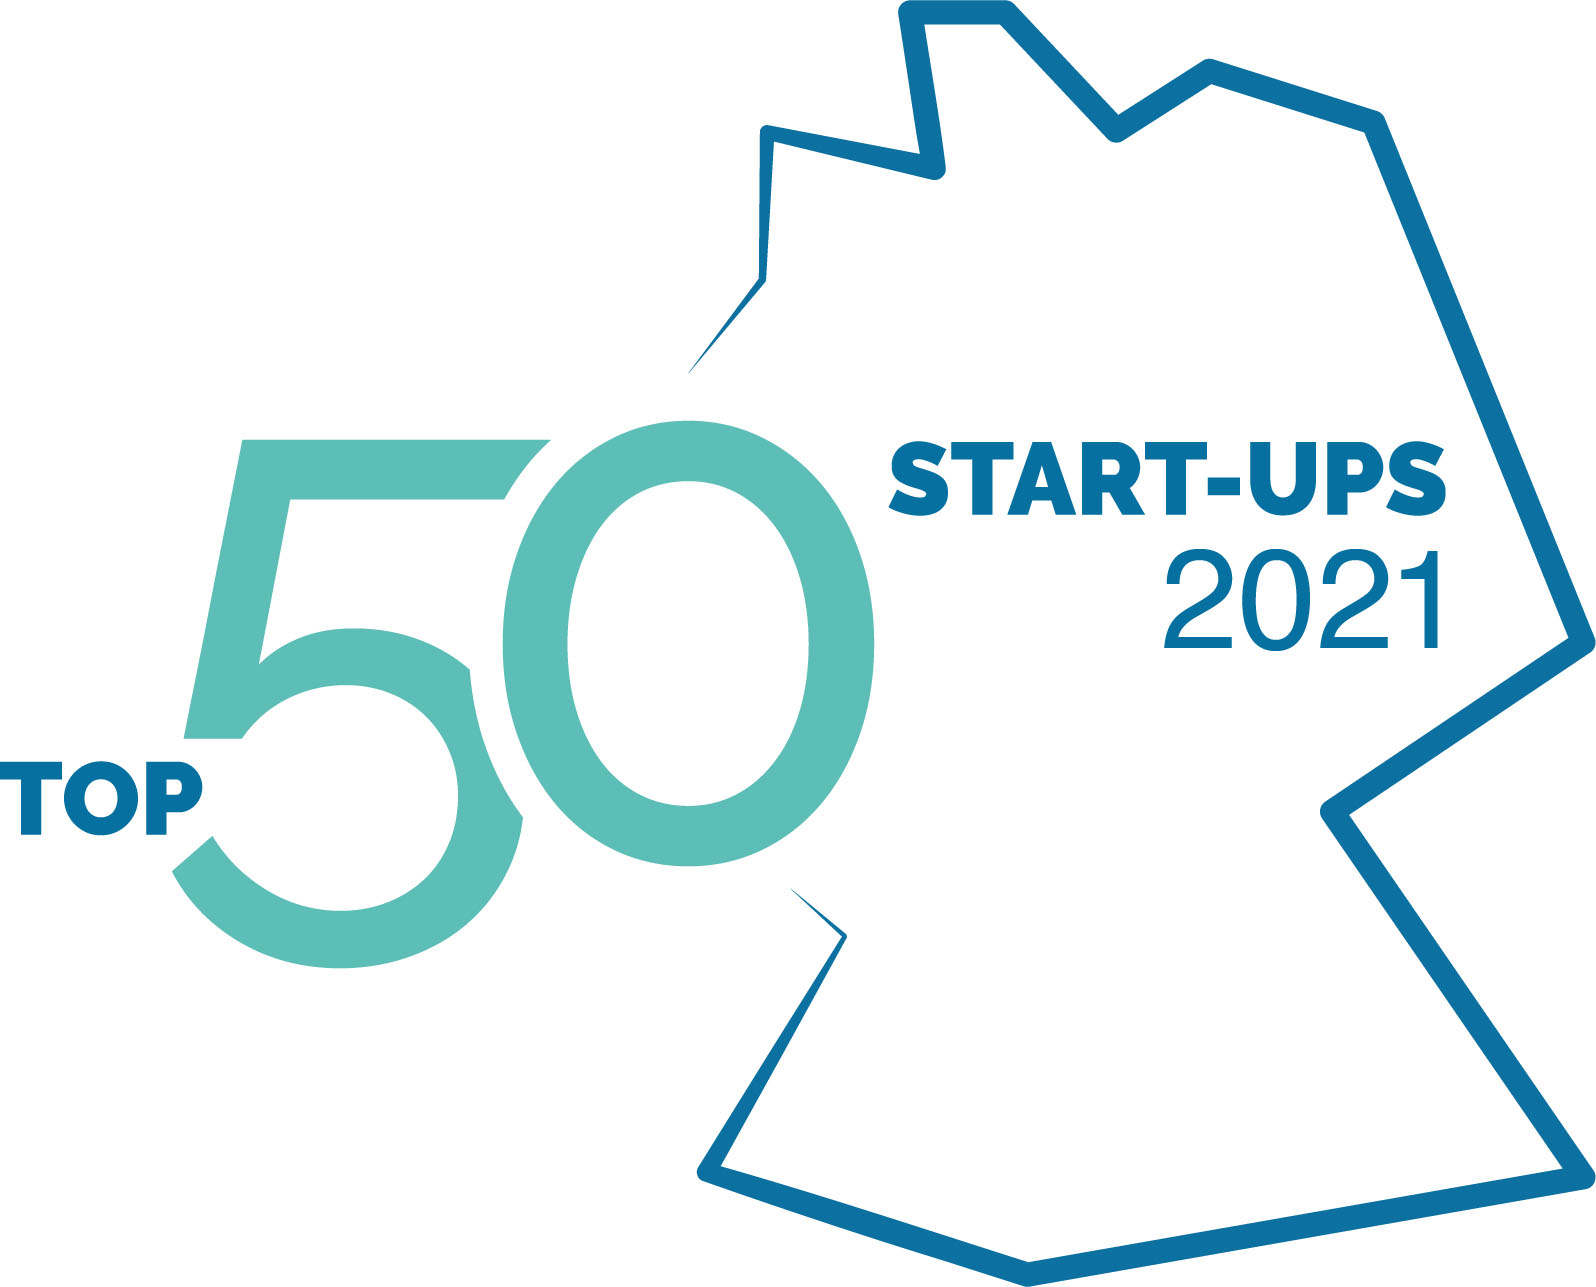 Top 50 Startups 2021